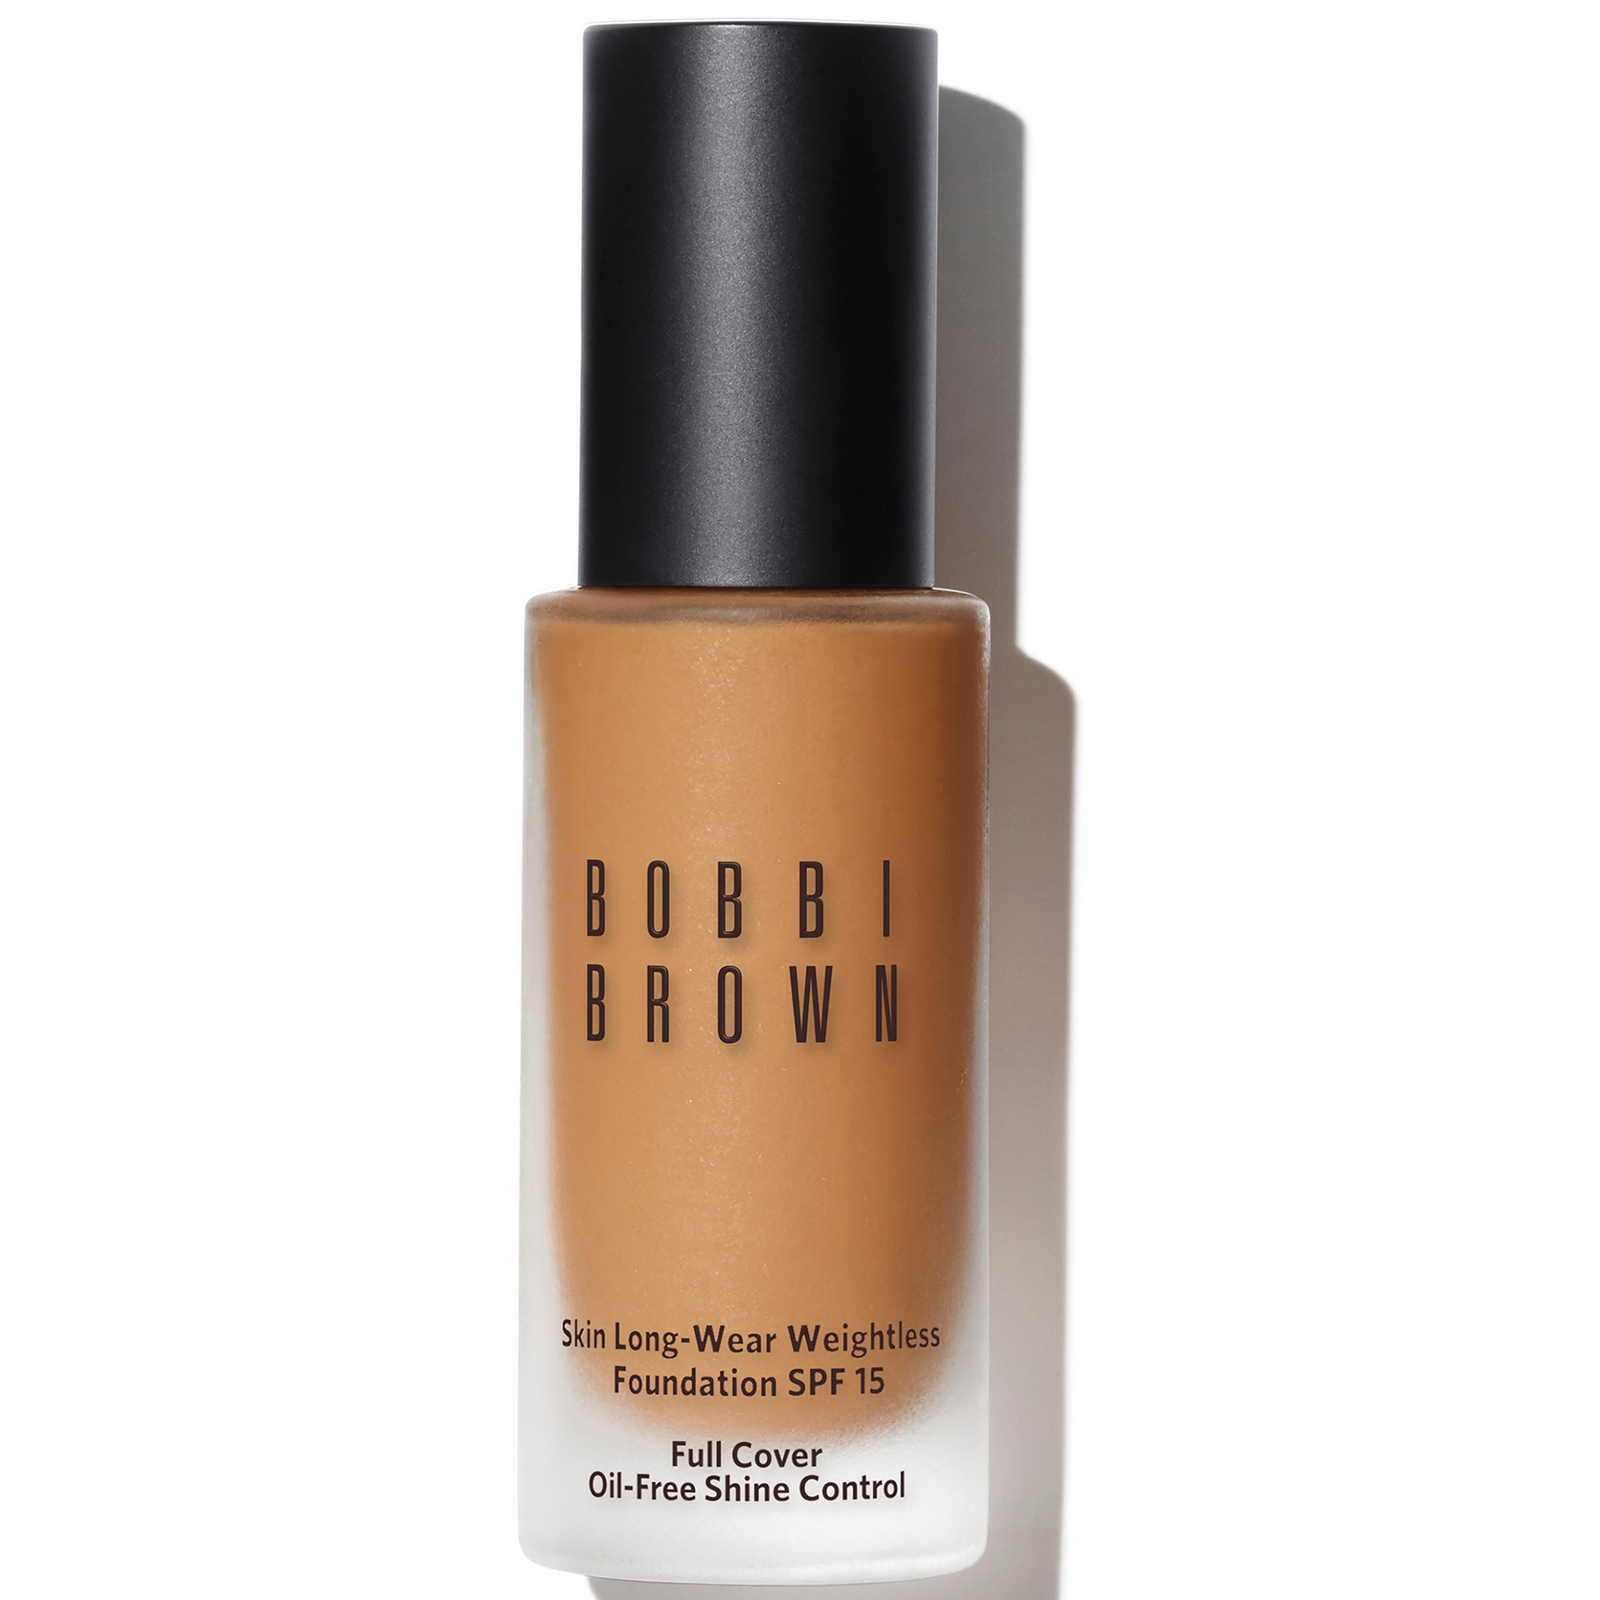 Bobbi Brown Skin Long-Wear Weightless Foundation SPF 15 (verschiedene Farbtöne) - Warm Natural von Bobbi Brown